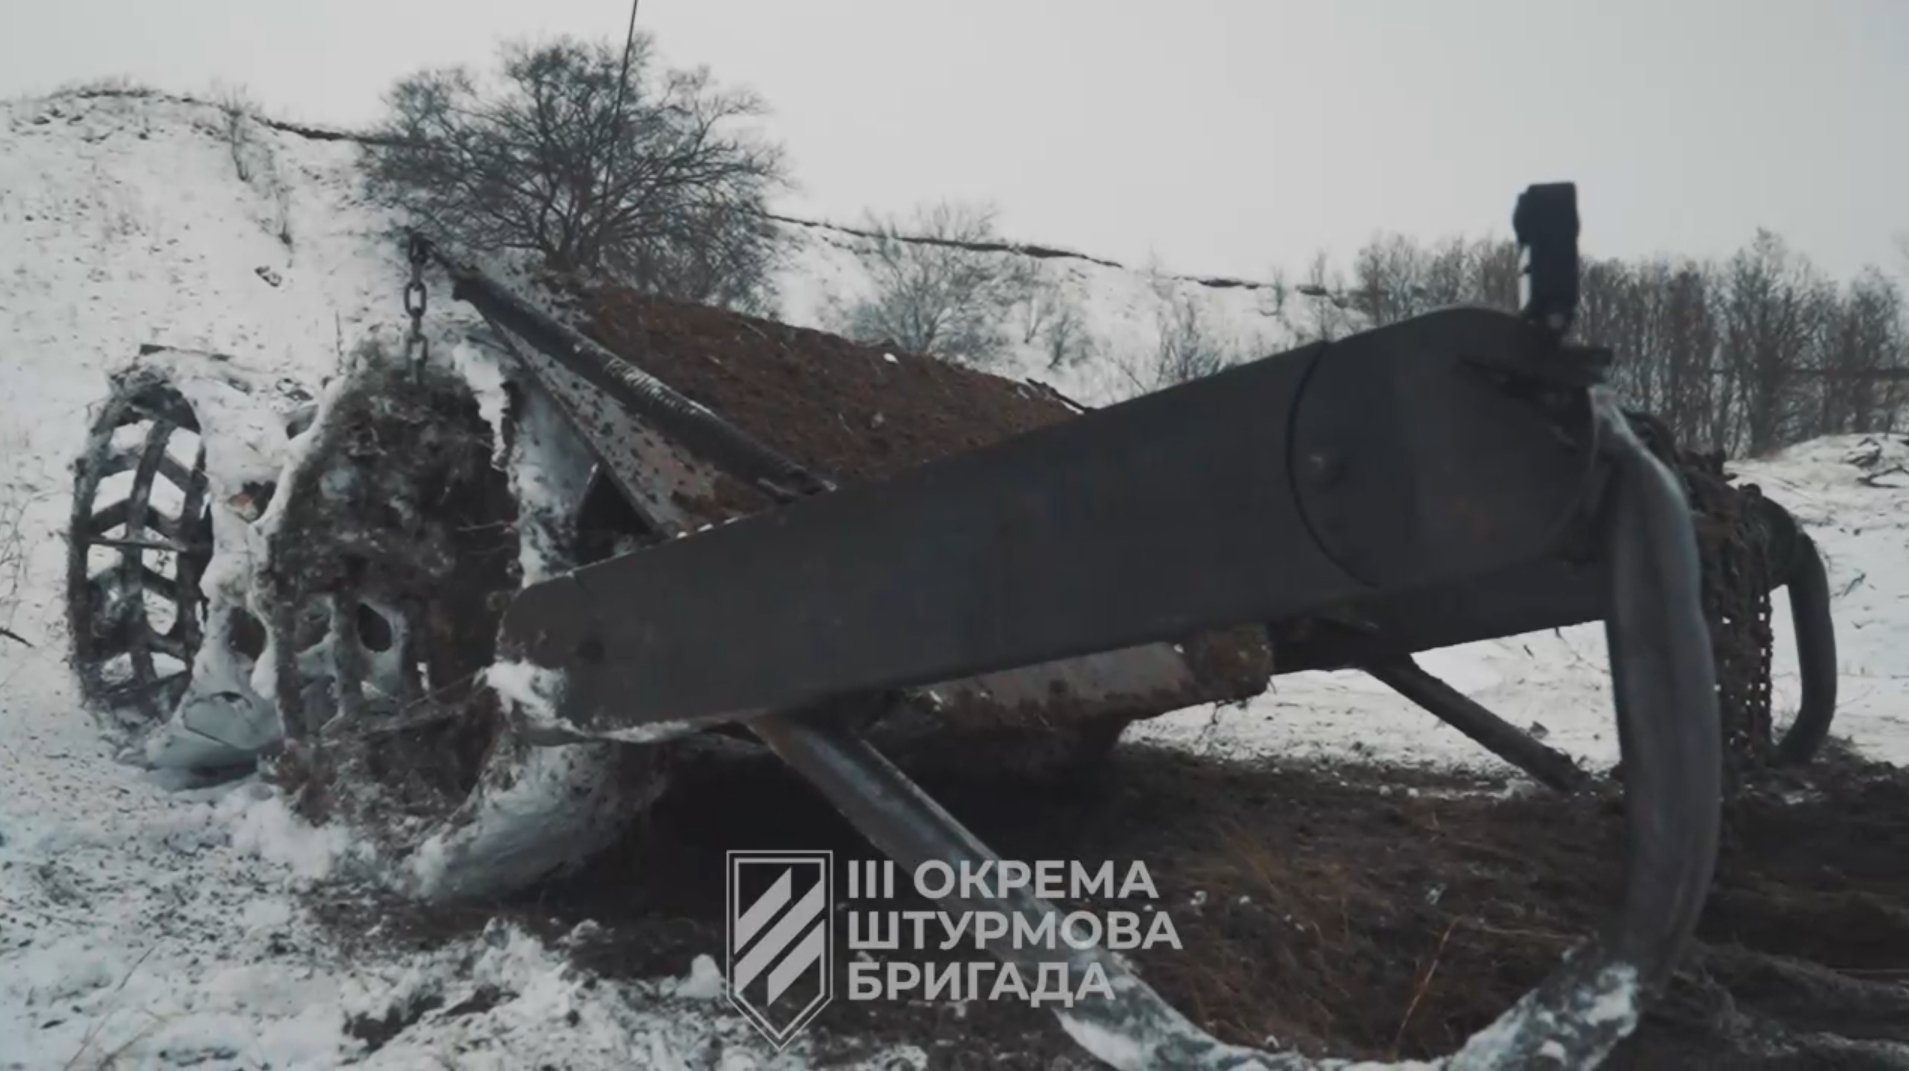 Український наземний безпілотник для розмінування. Кадр з відео 3-ї окремої штурмової бригади